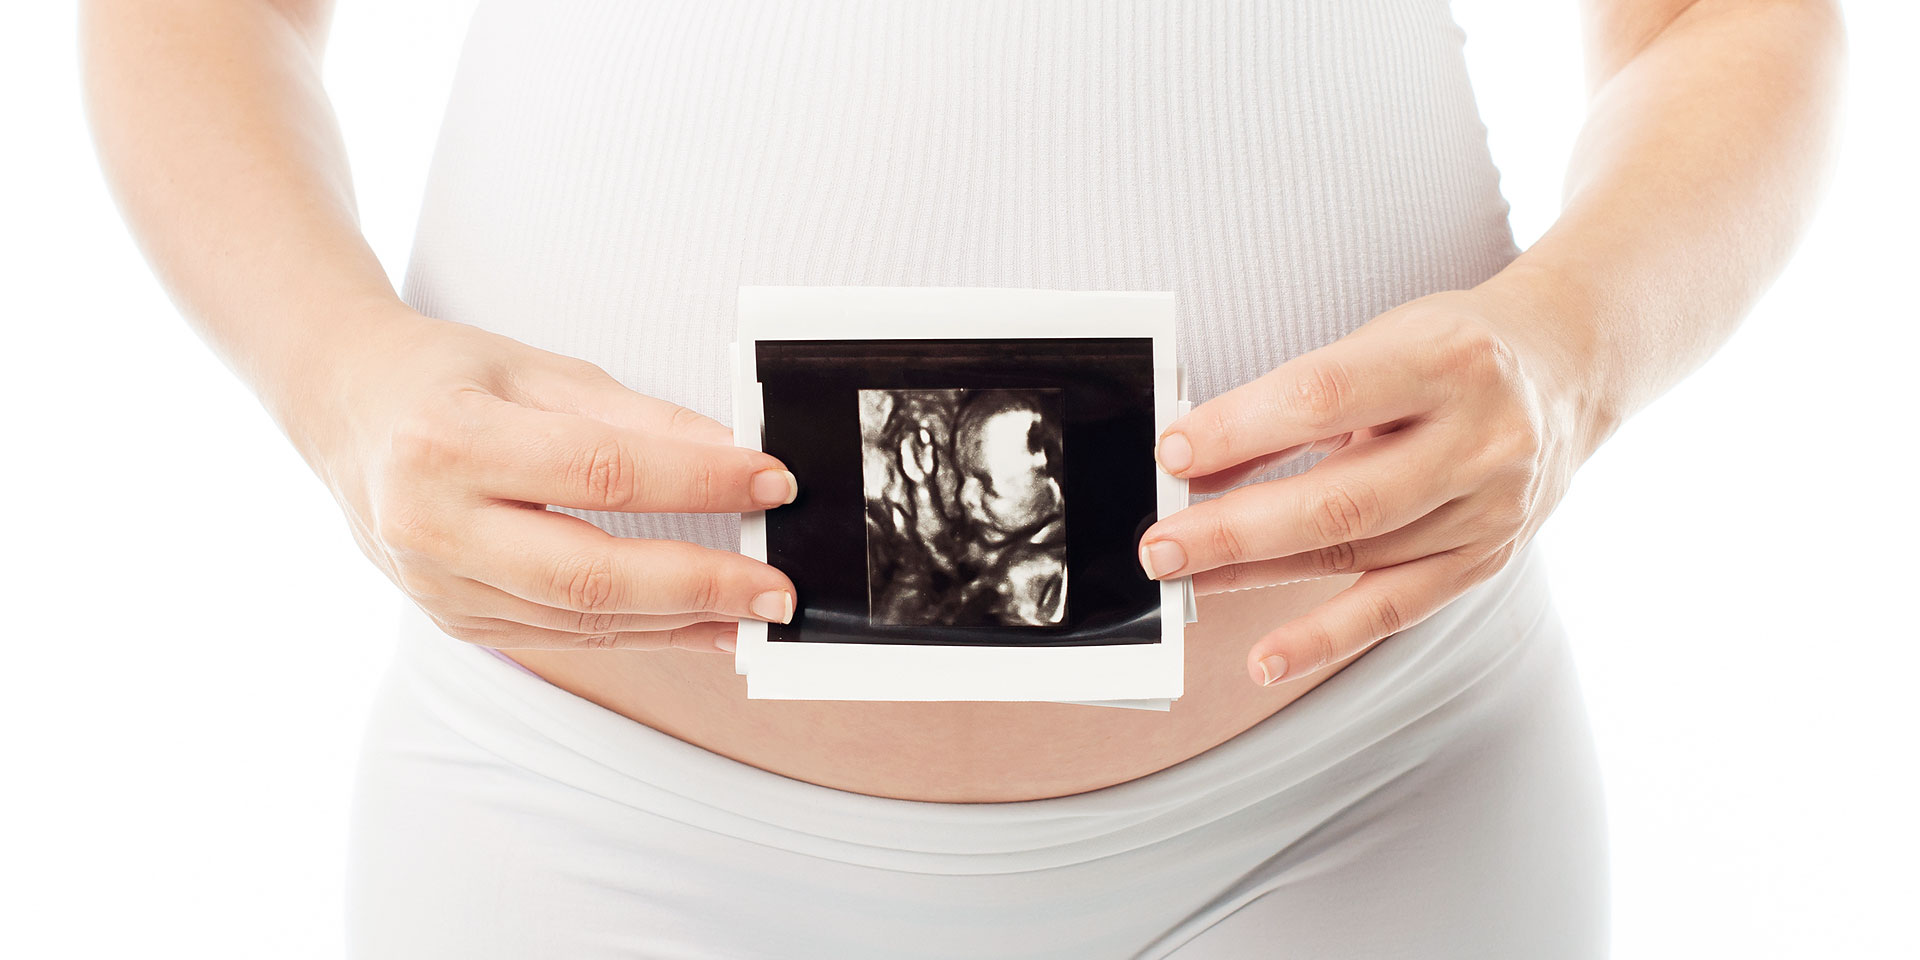 Schwangerschaft, Ultraschalluntersuchung